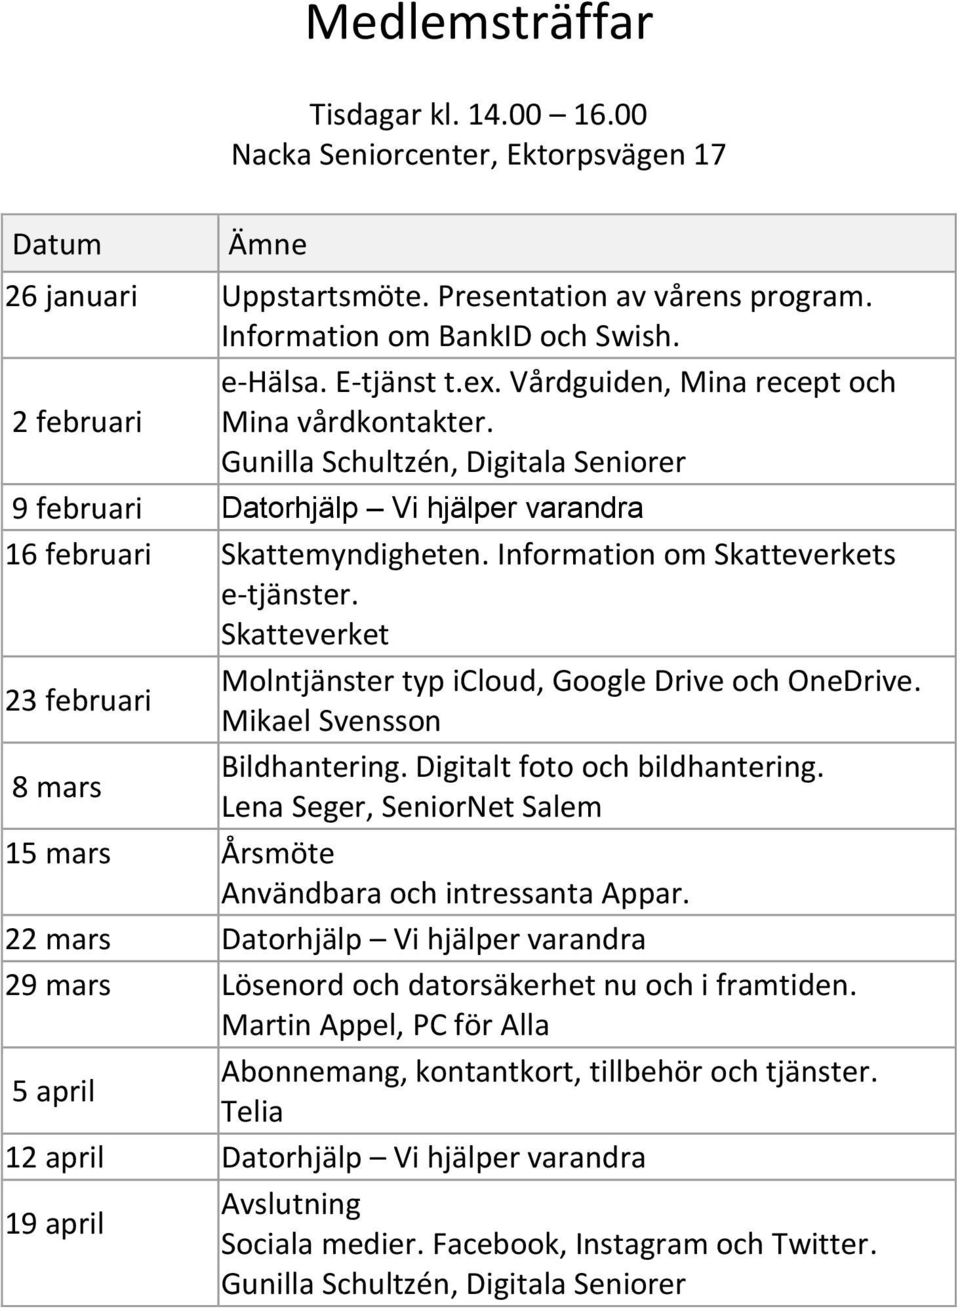 Information om Skatteverkets e-tjänster. Skatteverket Molntjänster typ icloud, Google Drive och OneDrive. 23 februari Mikael Svensson Bildhantering. Digitalt foto och bildhantering.